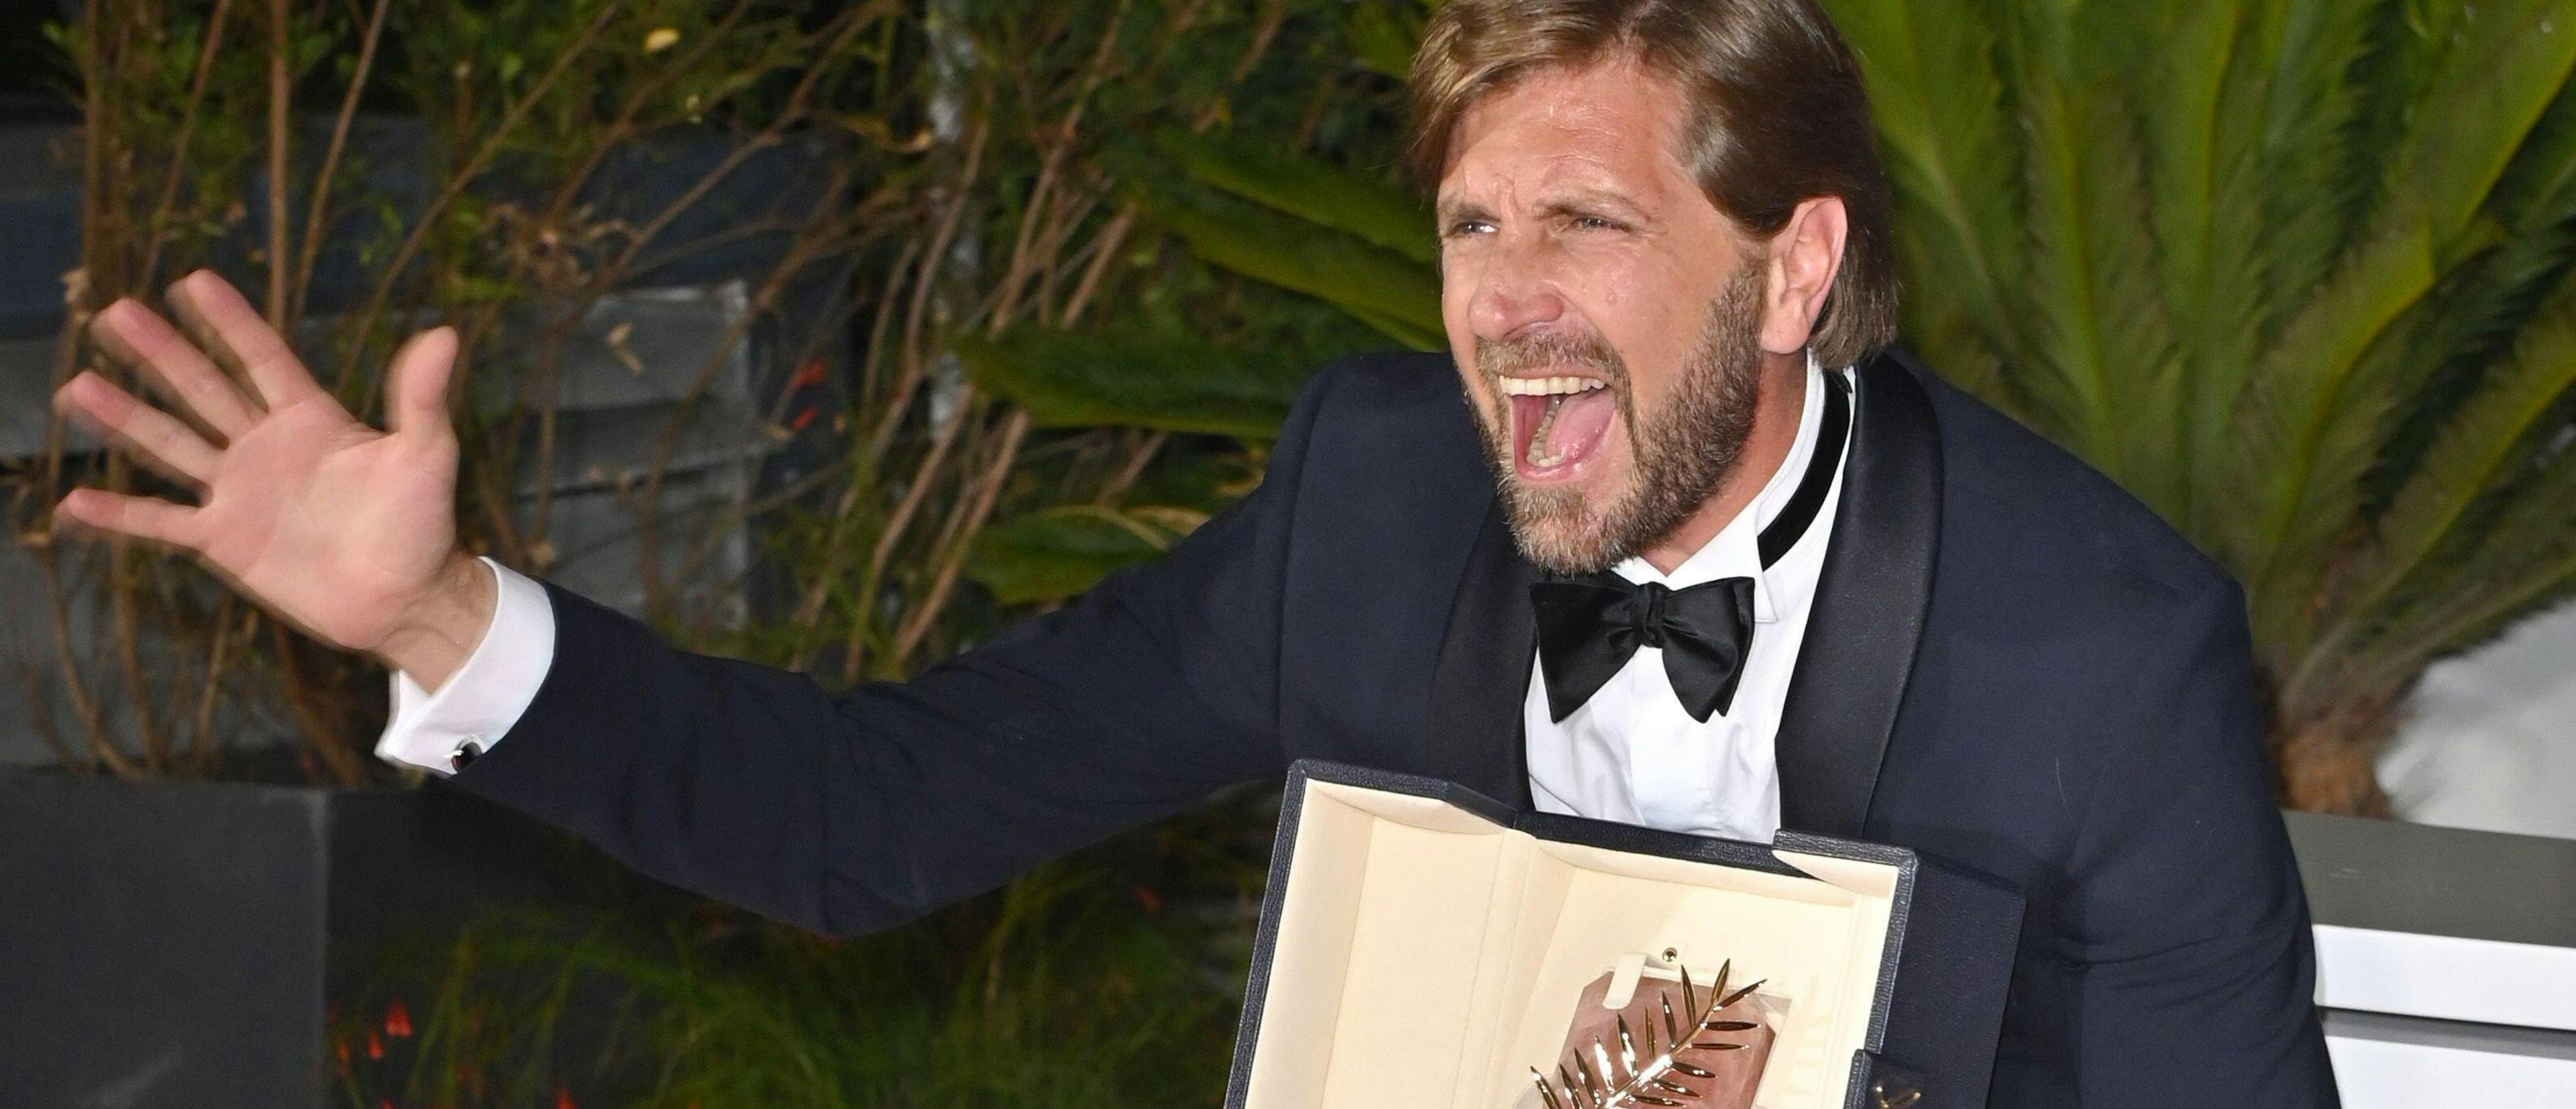 Ruben Östlund, ganador de la Palma de Oro por 'El triángulo de la tristeza', regresa al Festival de Cannes como presidente del jurado